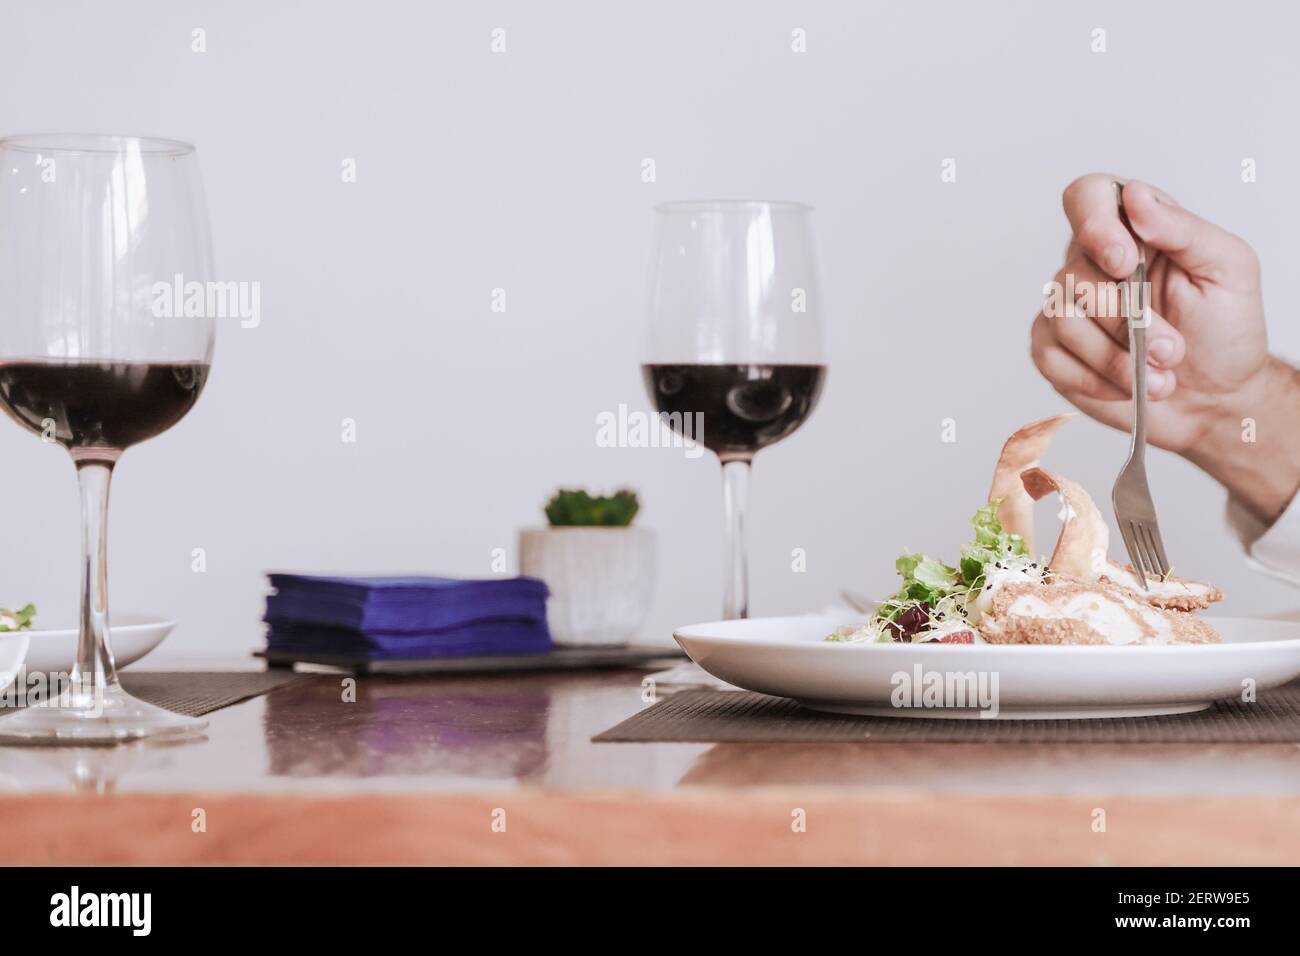 Portrait d'une main avec nourriture et vin. Cuisine, boissons et concept romantique. Banque D'Images